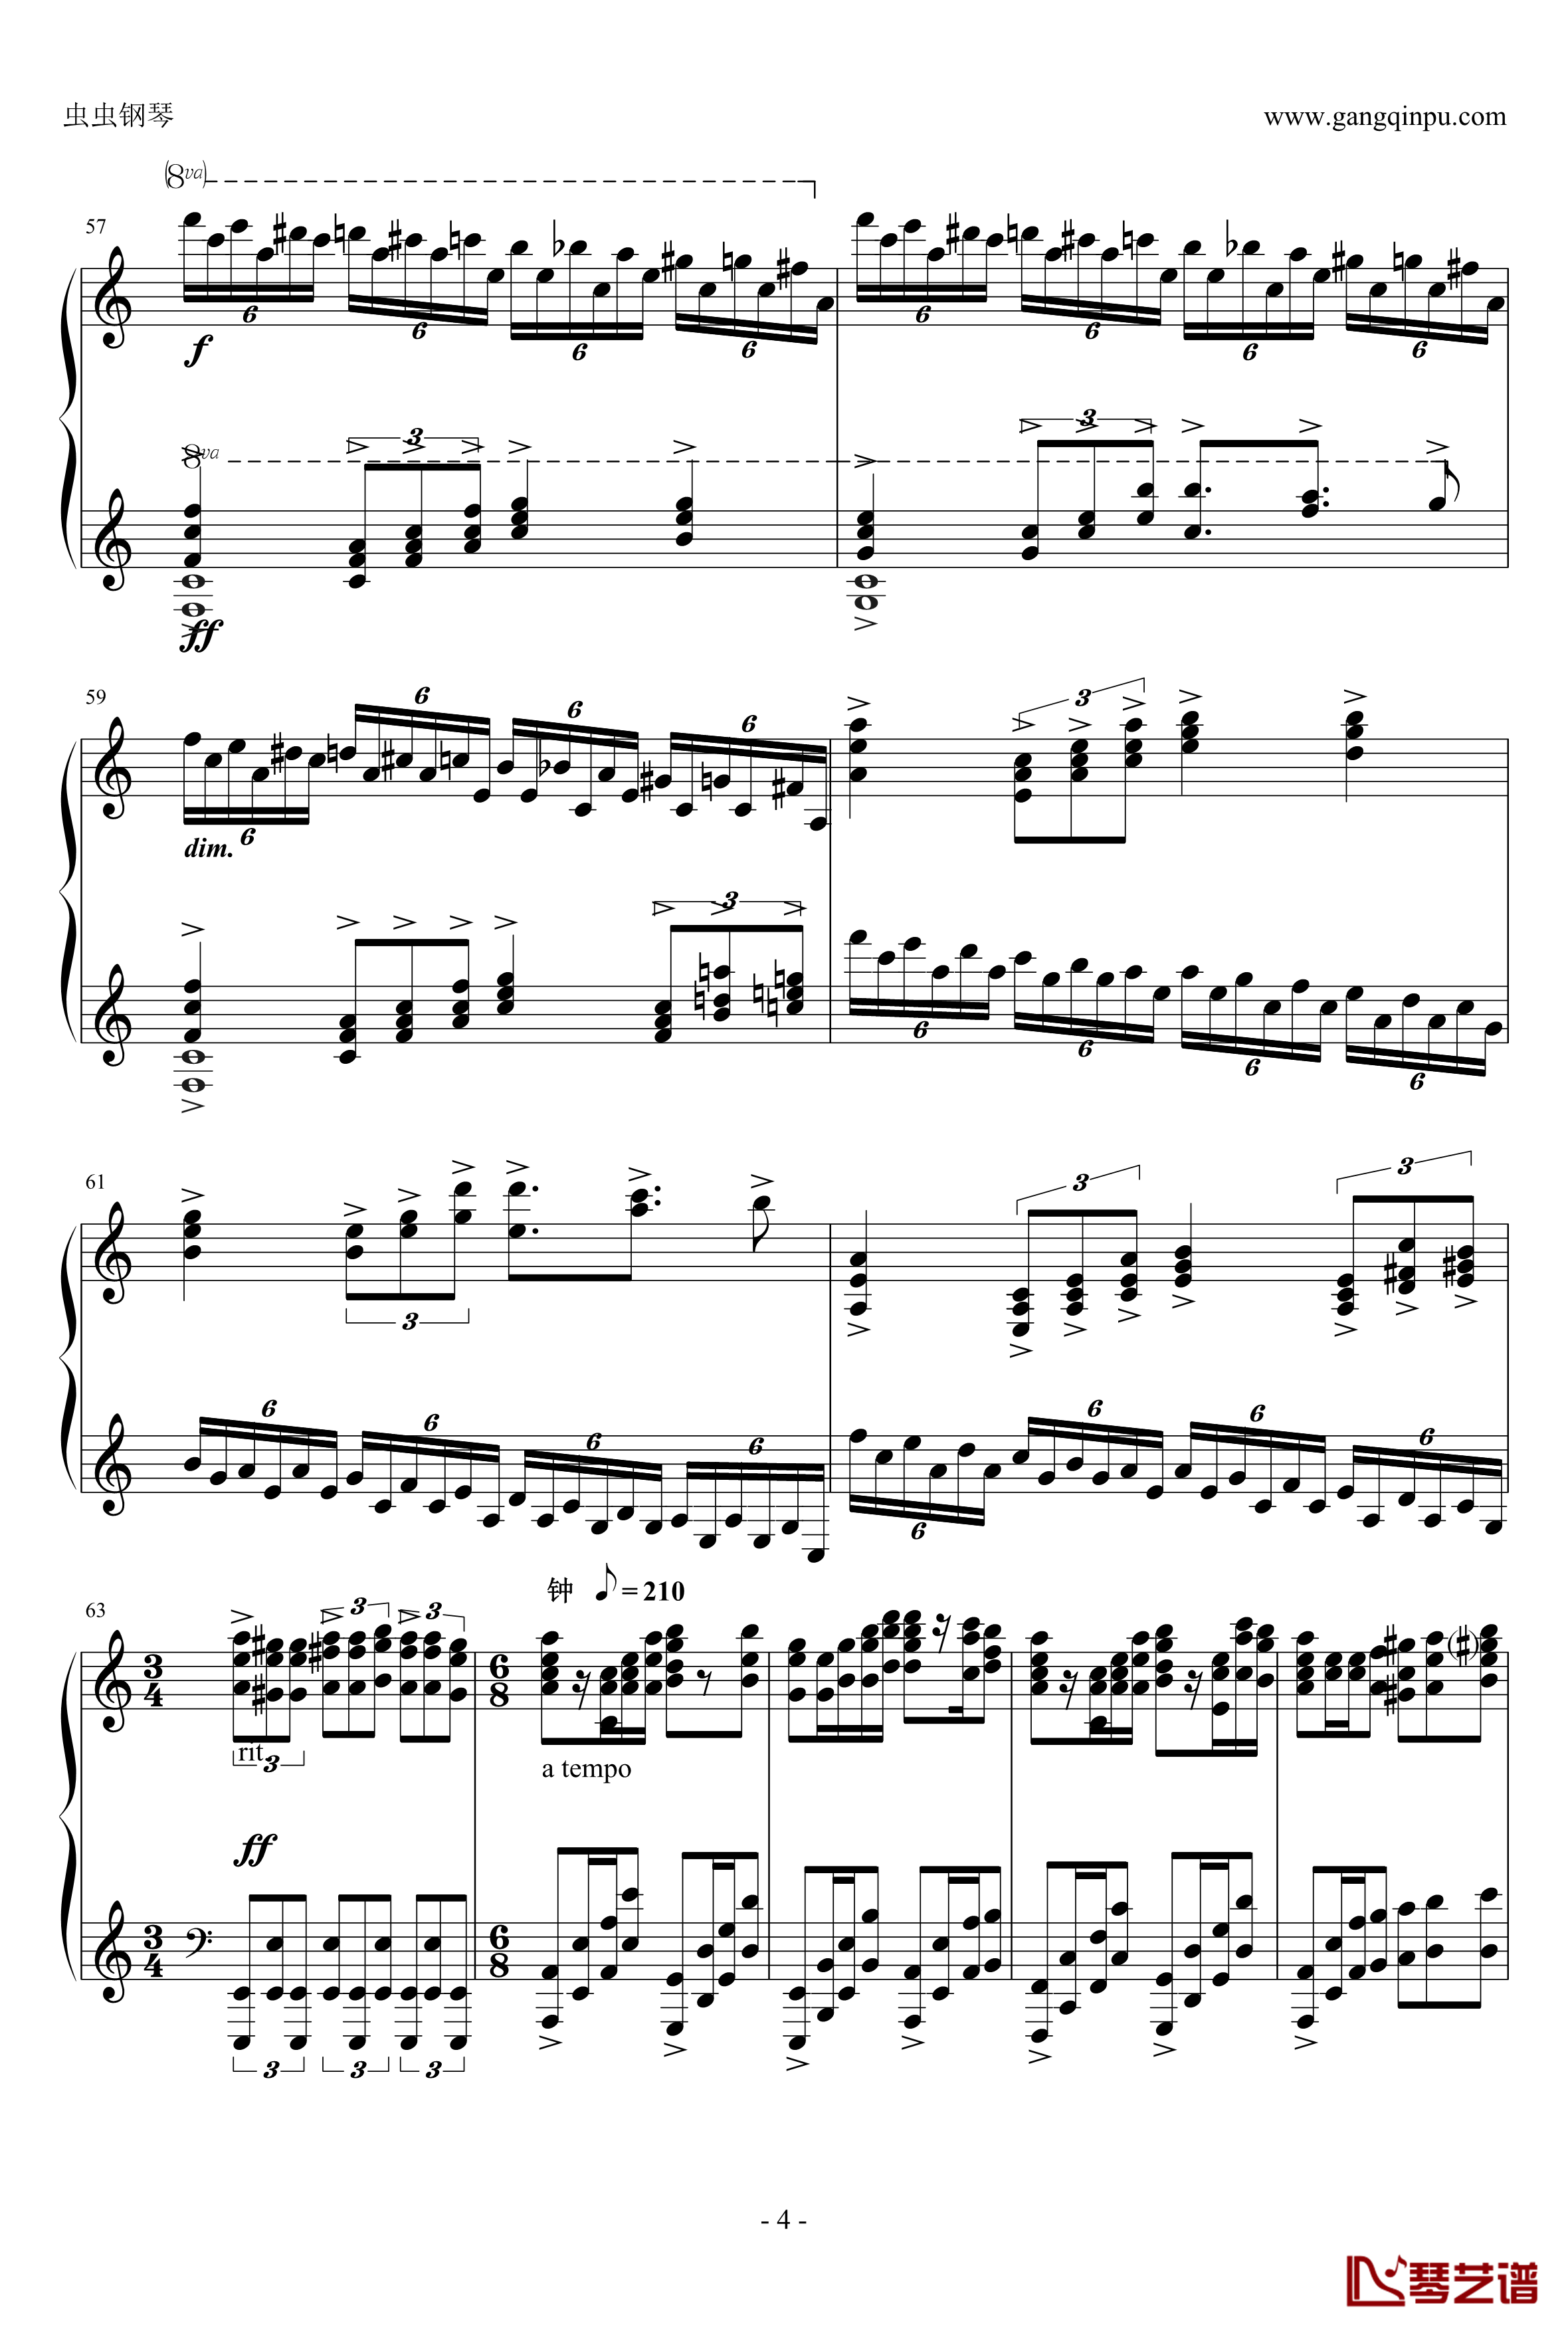 爱丽丝主题狂想曲钢琴谱-绝对的听觉冲击-贝多芬-beethoven4